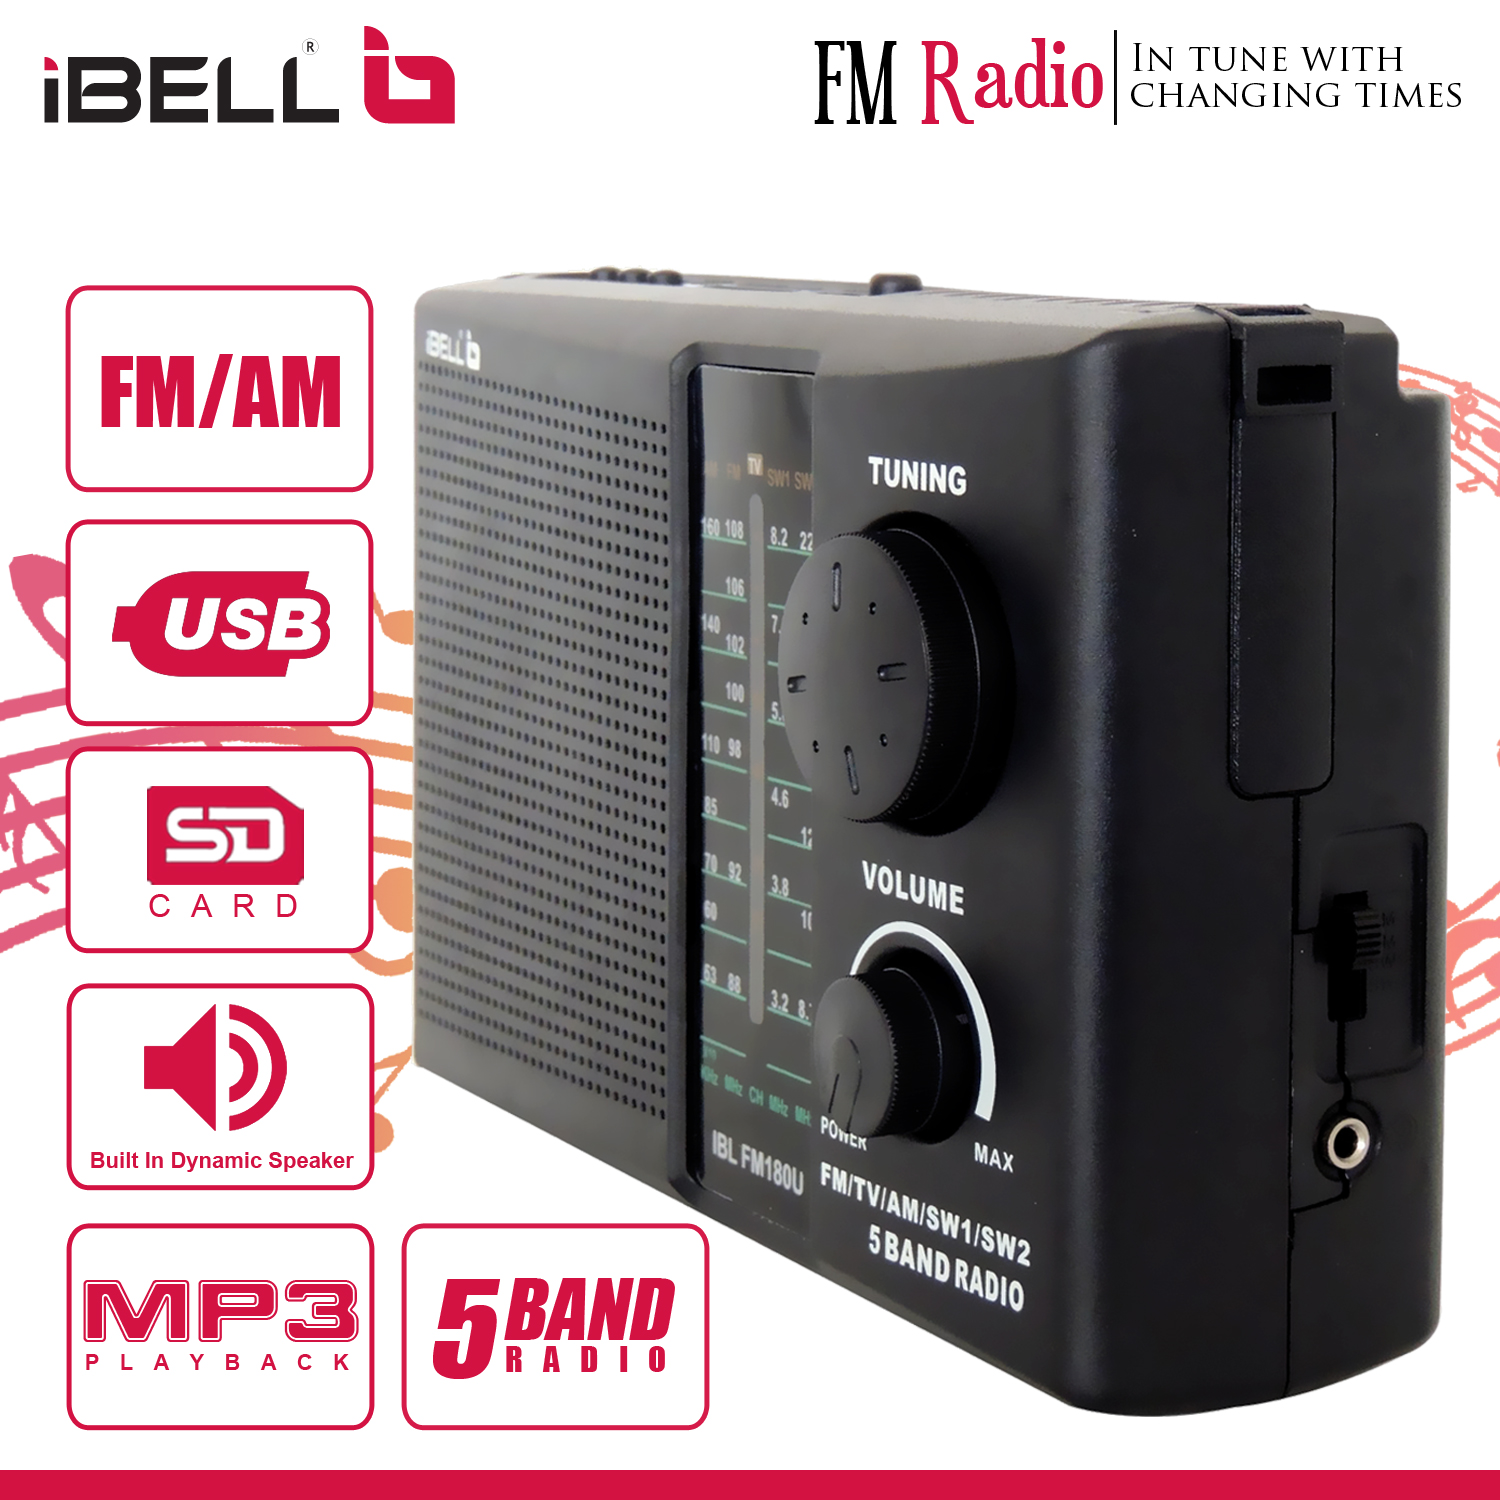 Ibell IBLFM180U Portable FM Radio with Bluetooth Speaker